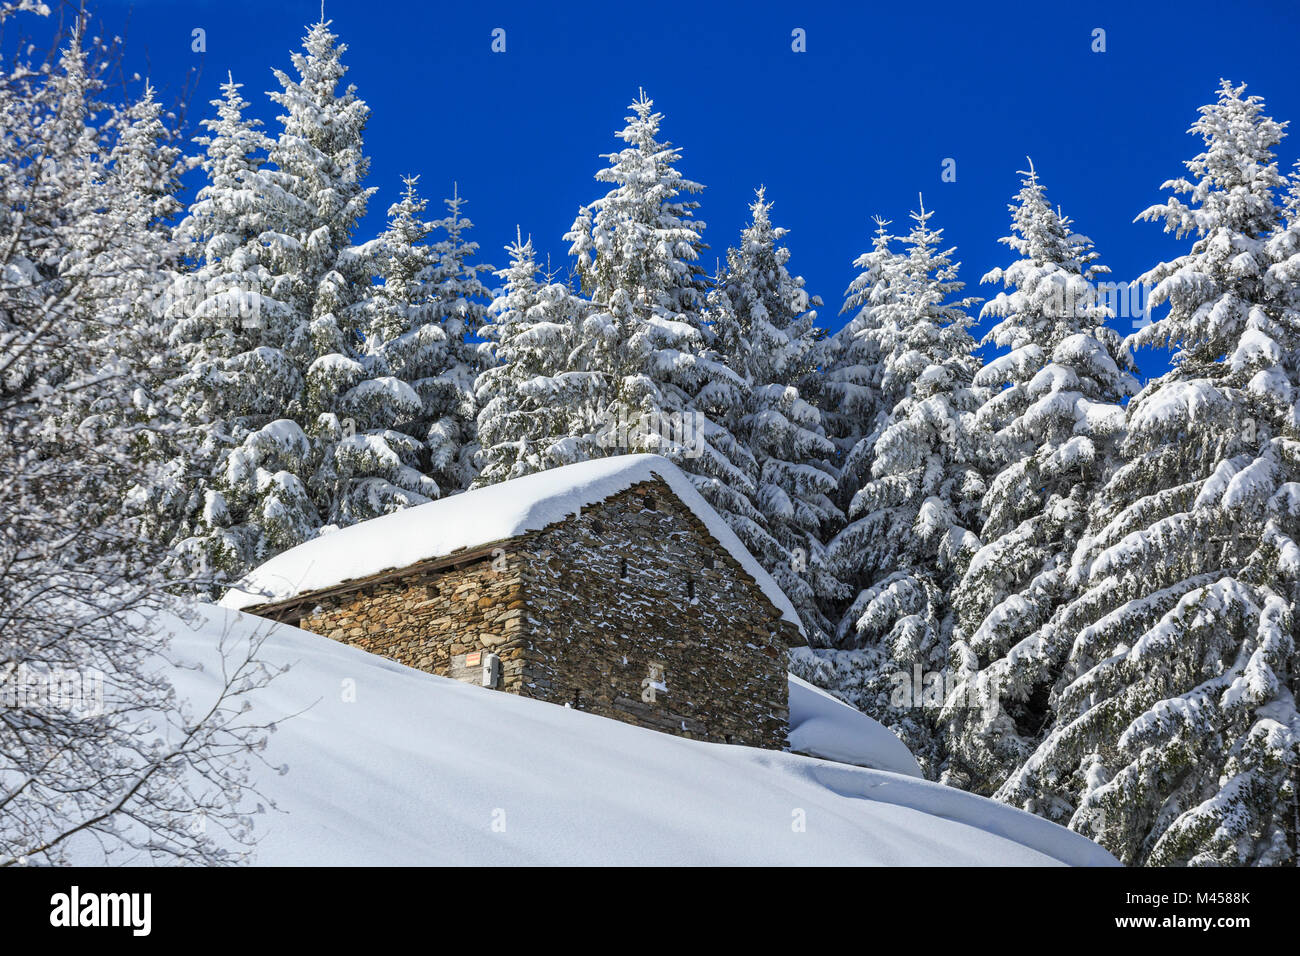 Cabane en pierre dans la forêt enneigée, Monte Olano, Valgerola, Valtellina, province de Sondrio, Lombardie, Italie Banque D'Images